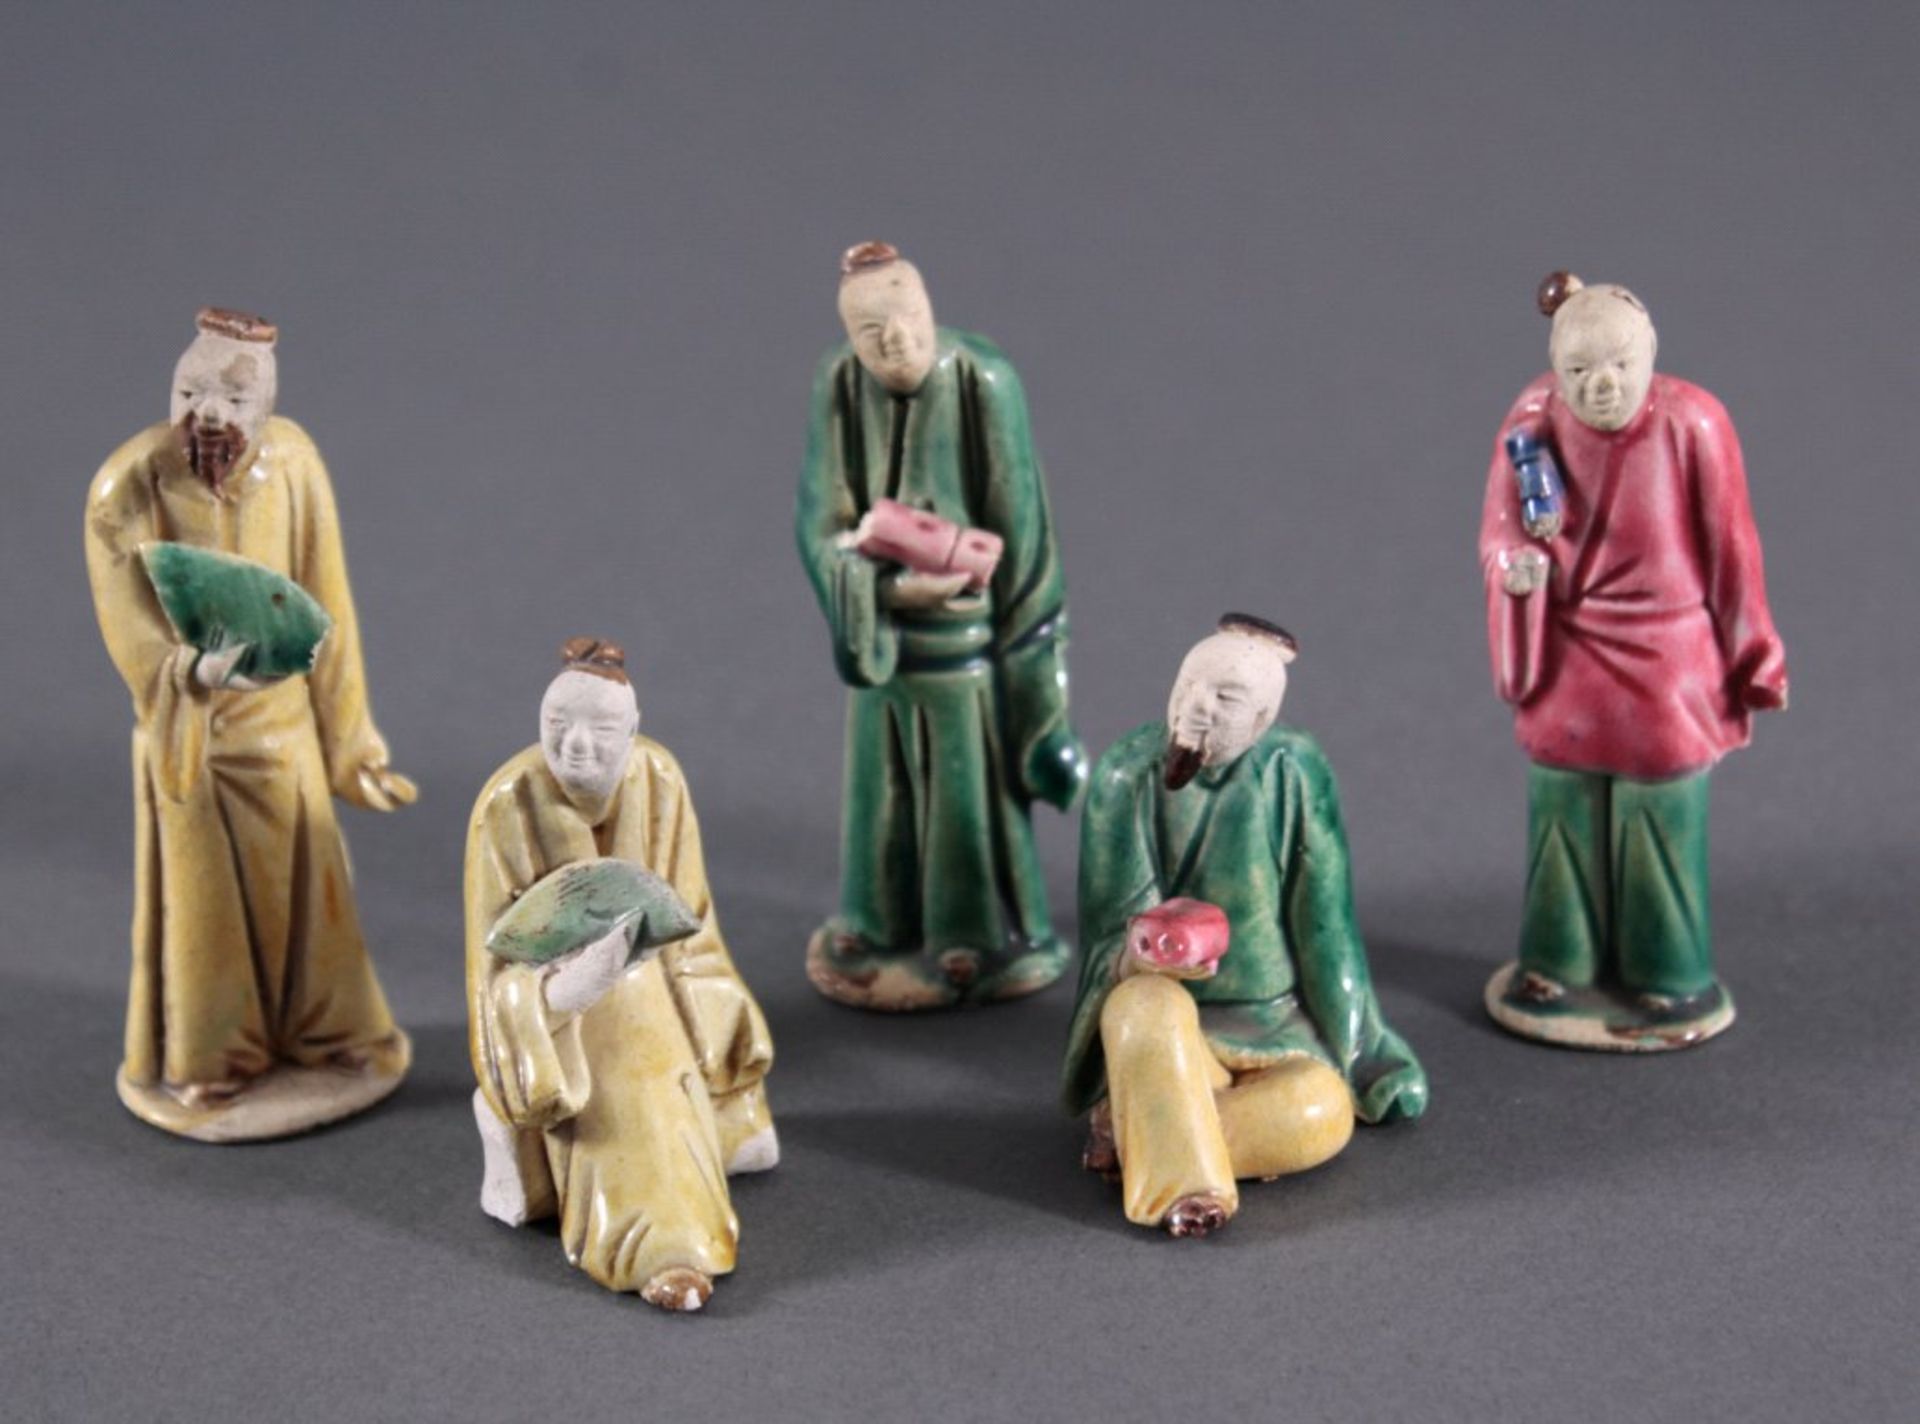 Fünf Keramik-Figuren, "Gelehrter"China, stehende und sitzende Ausformung, in den